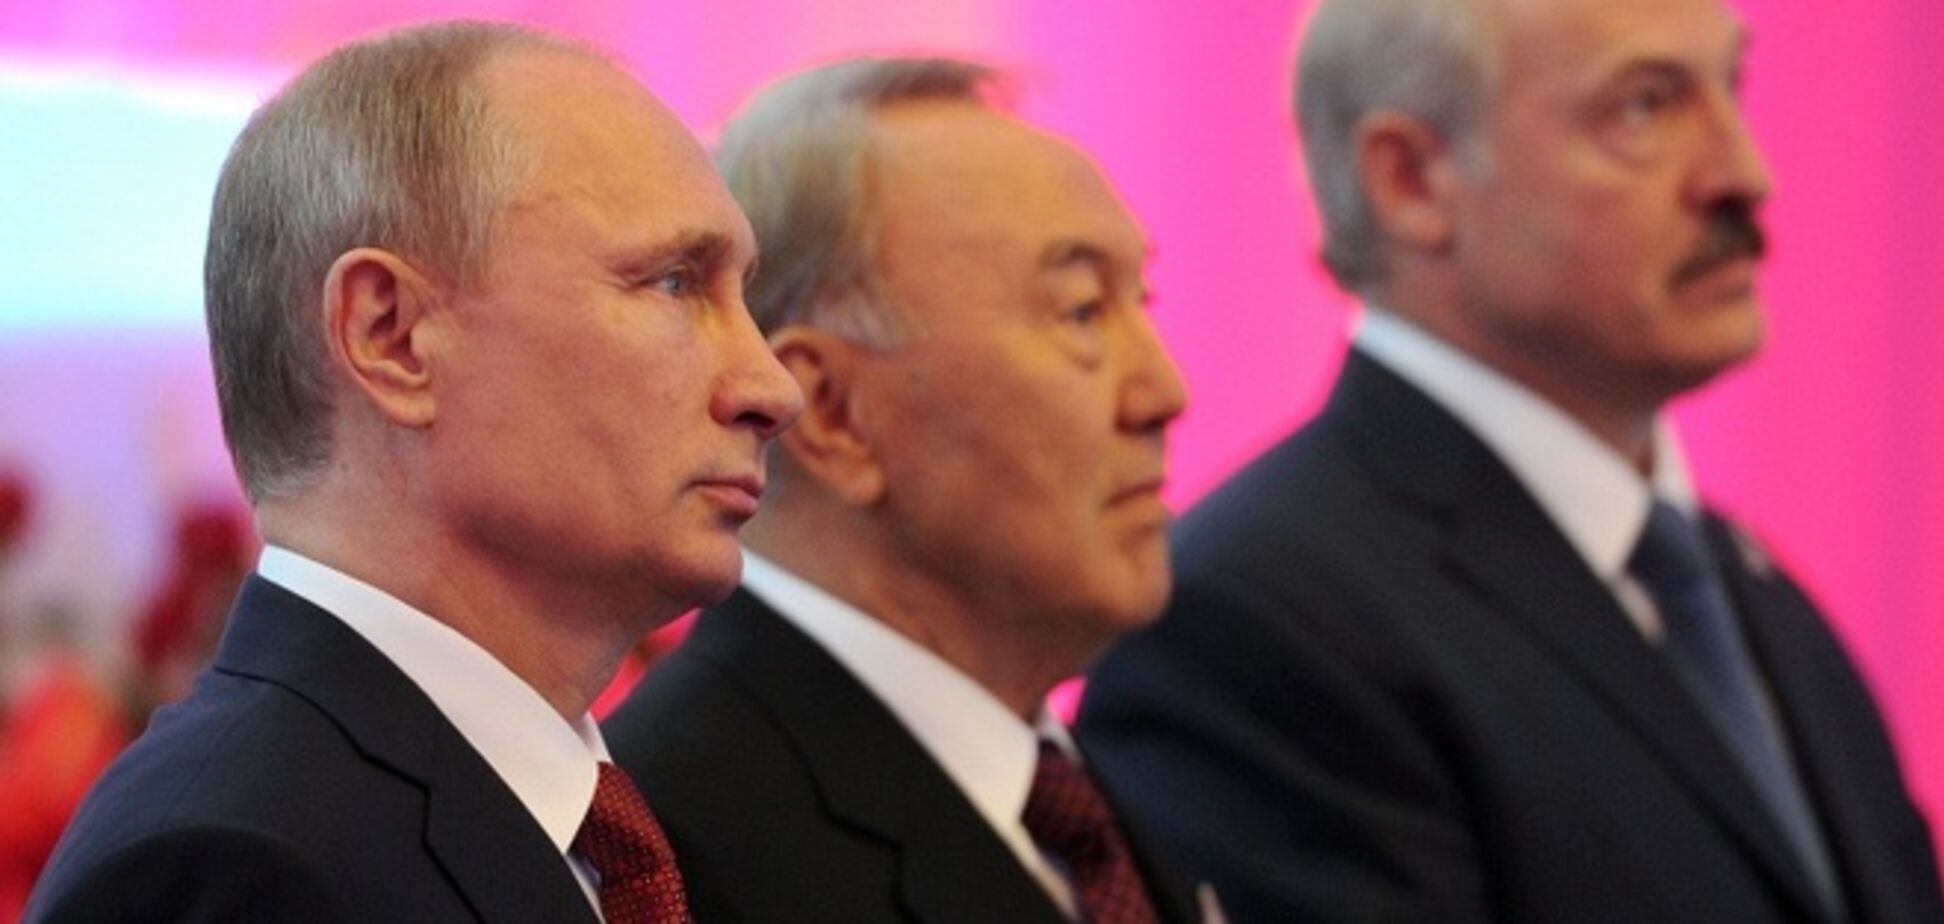 Россия, Казахстан и Беларусь создали Евразийский экономический союз